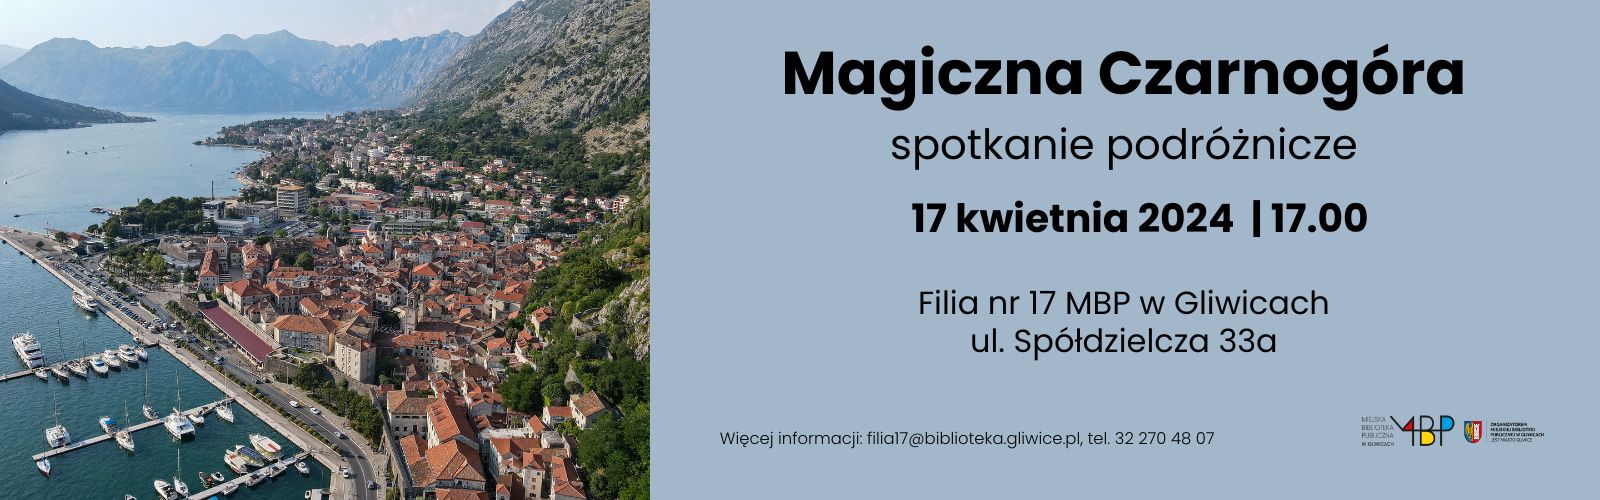 Magiczna Czarnogóra – spotkanie podróżnicze